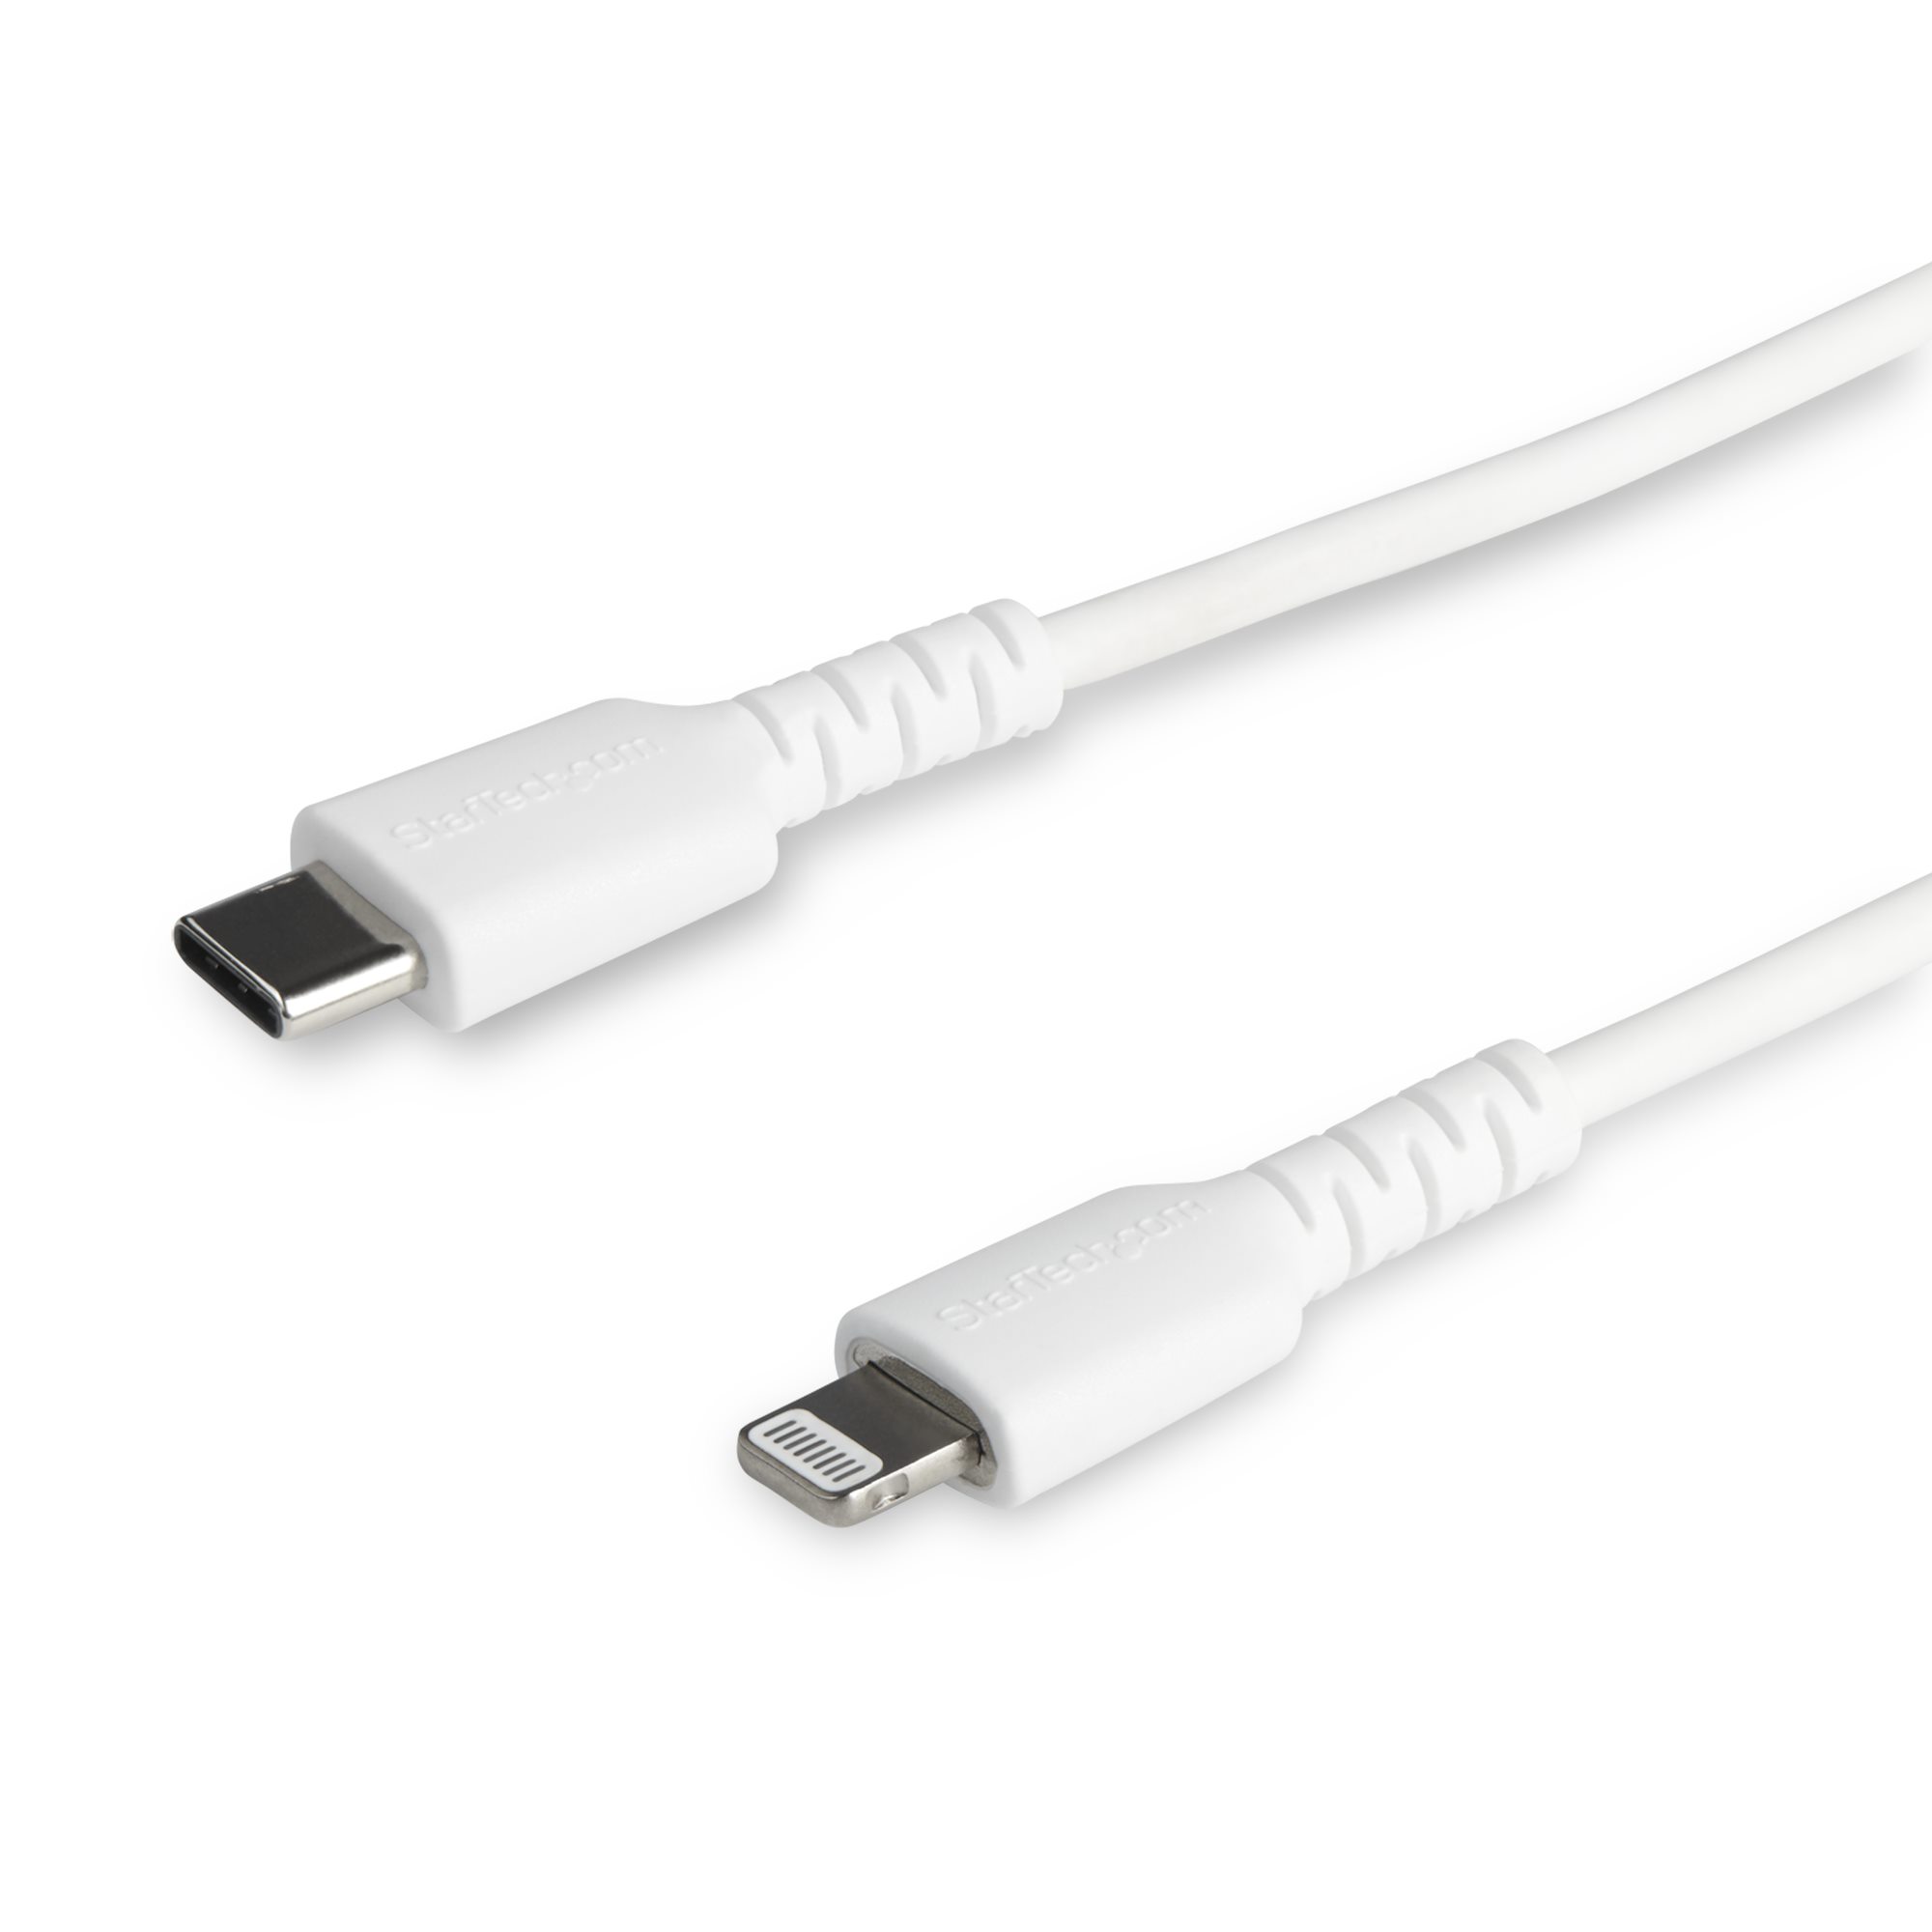 Spekulerer død Overskæg 6ft/2m Durable USB-C to Lightning Cable - Lightning Cables | Cables |  StarTech.com